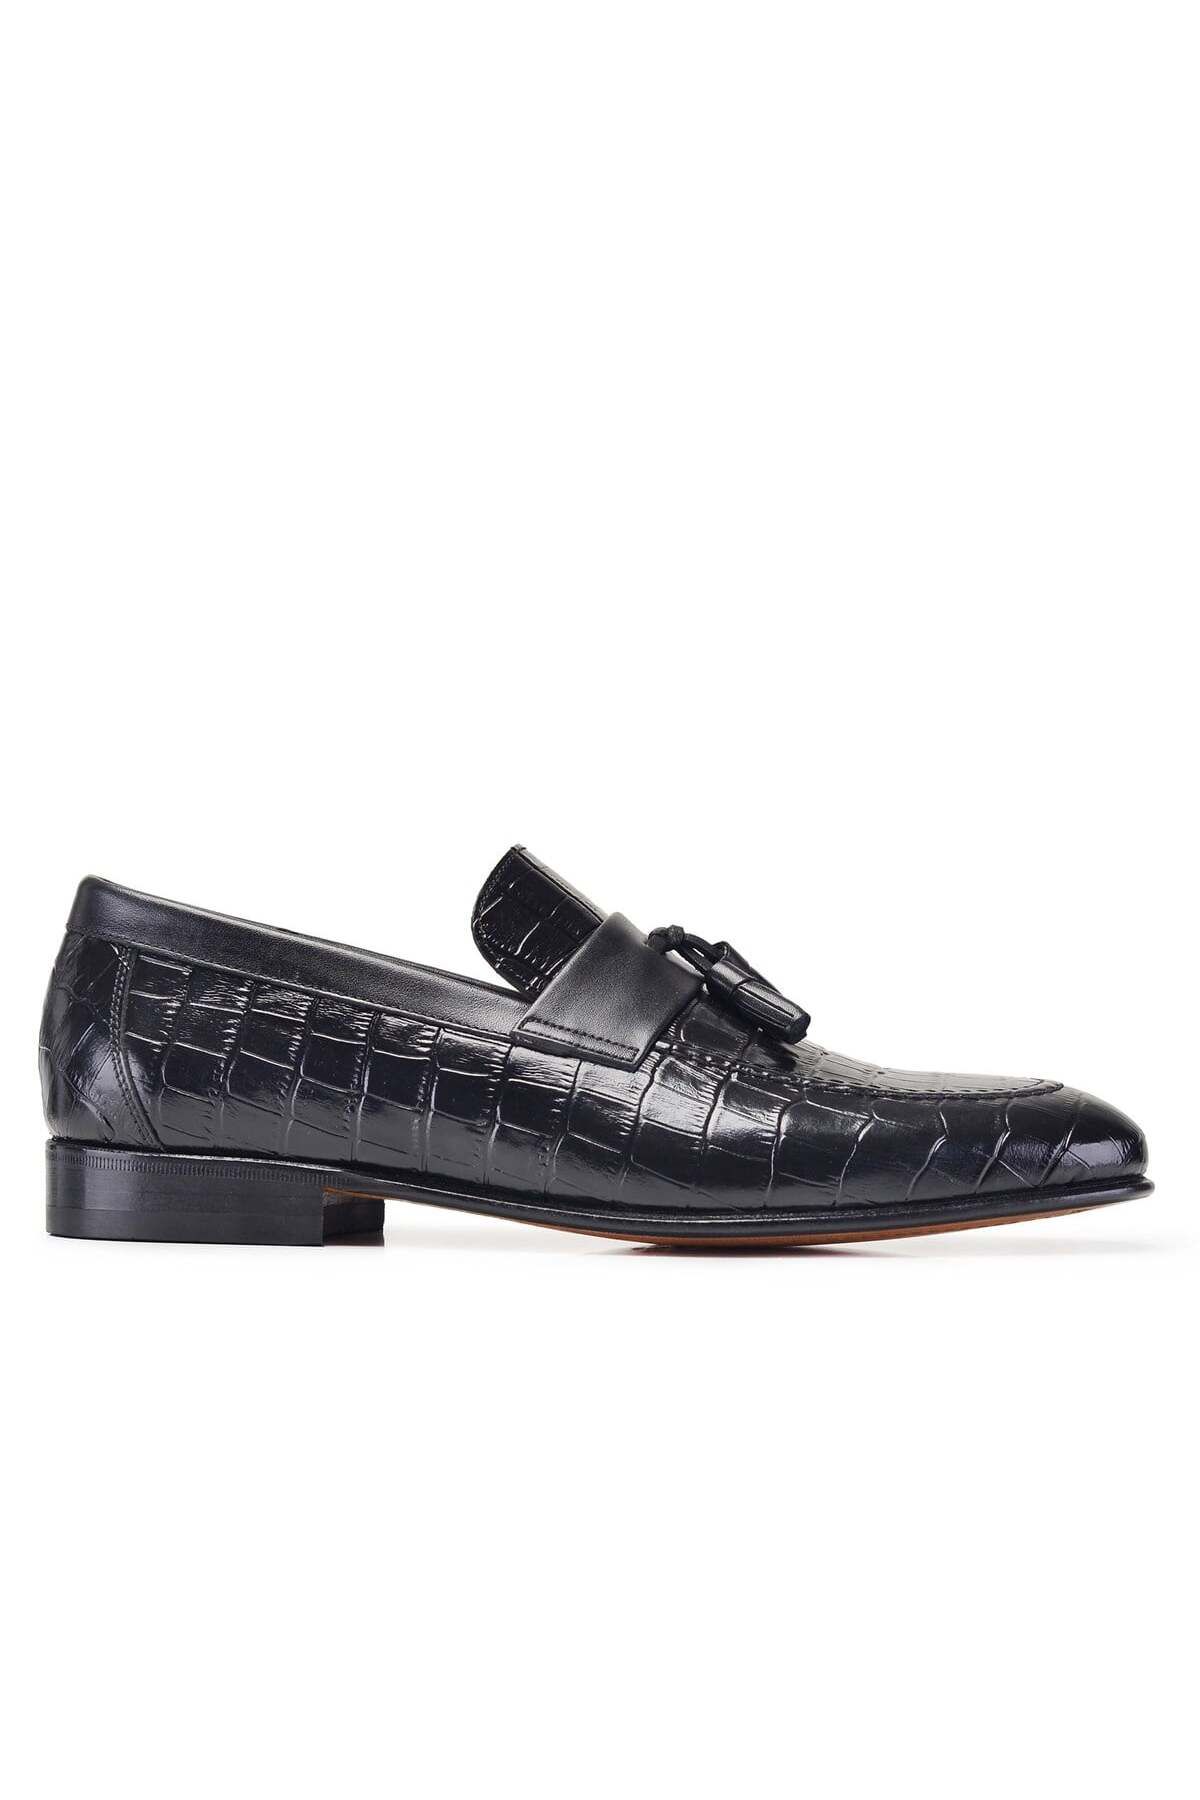 Nevzat Onay Siyah Klasik Loafer Kösele Erkek Ayakkabı -10936-